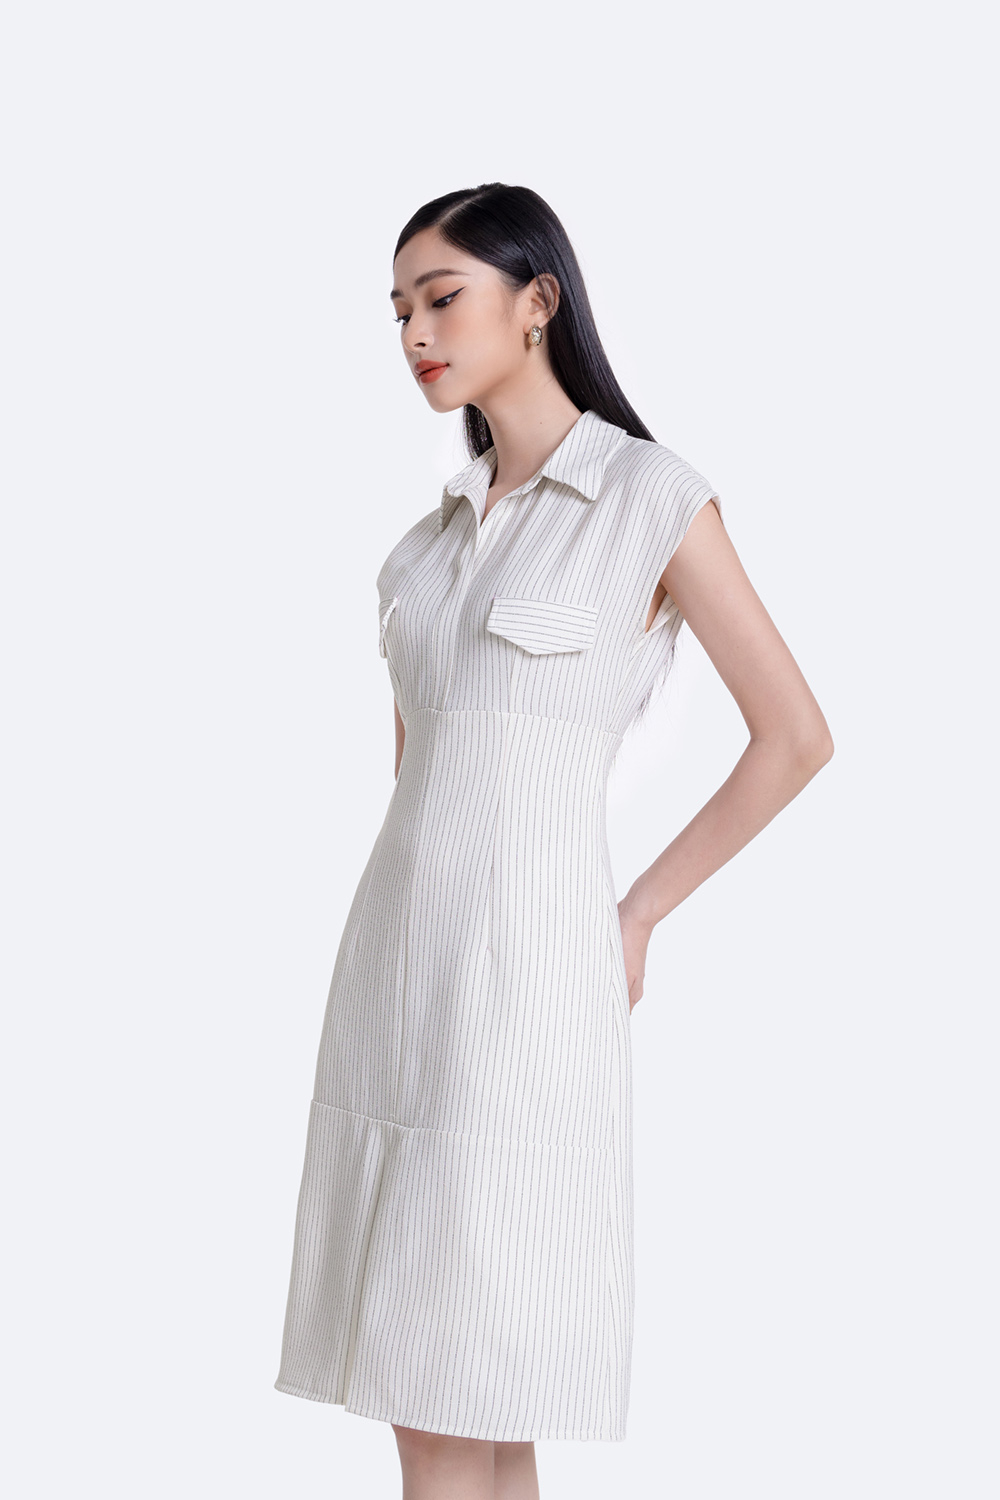 Học ngay 5 kiểu váy sơ mi cực đẹp của sao Việt, cứ mặc là chắc chắn được  khen!